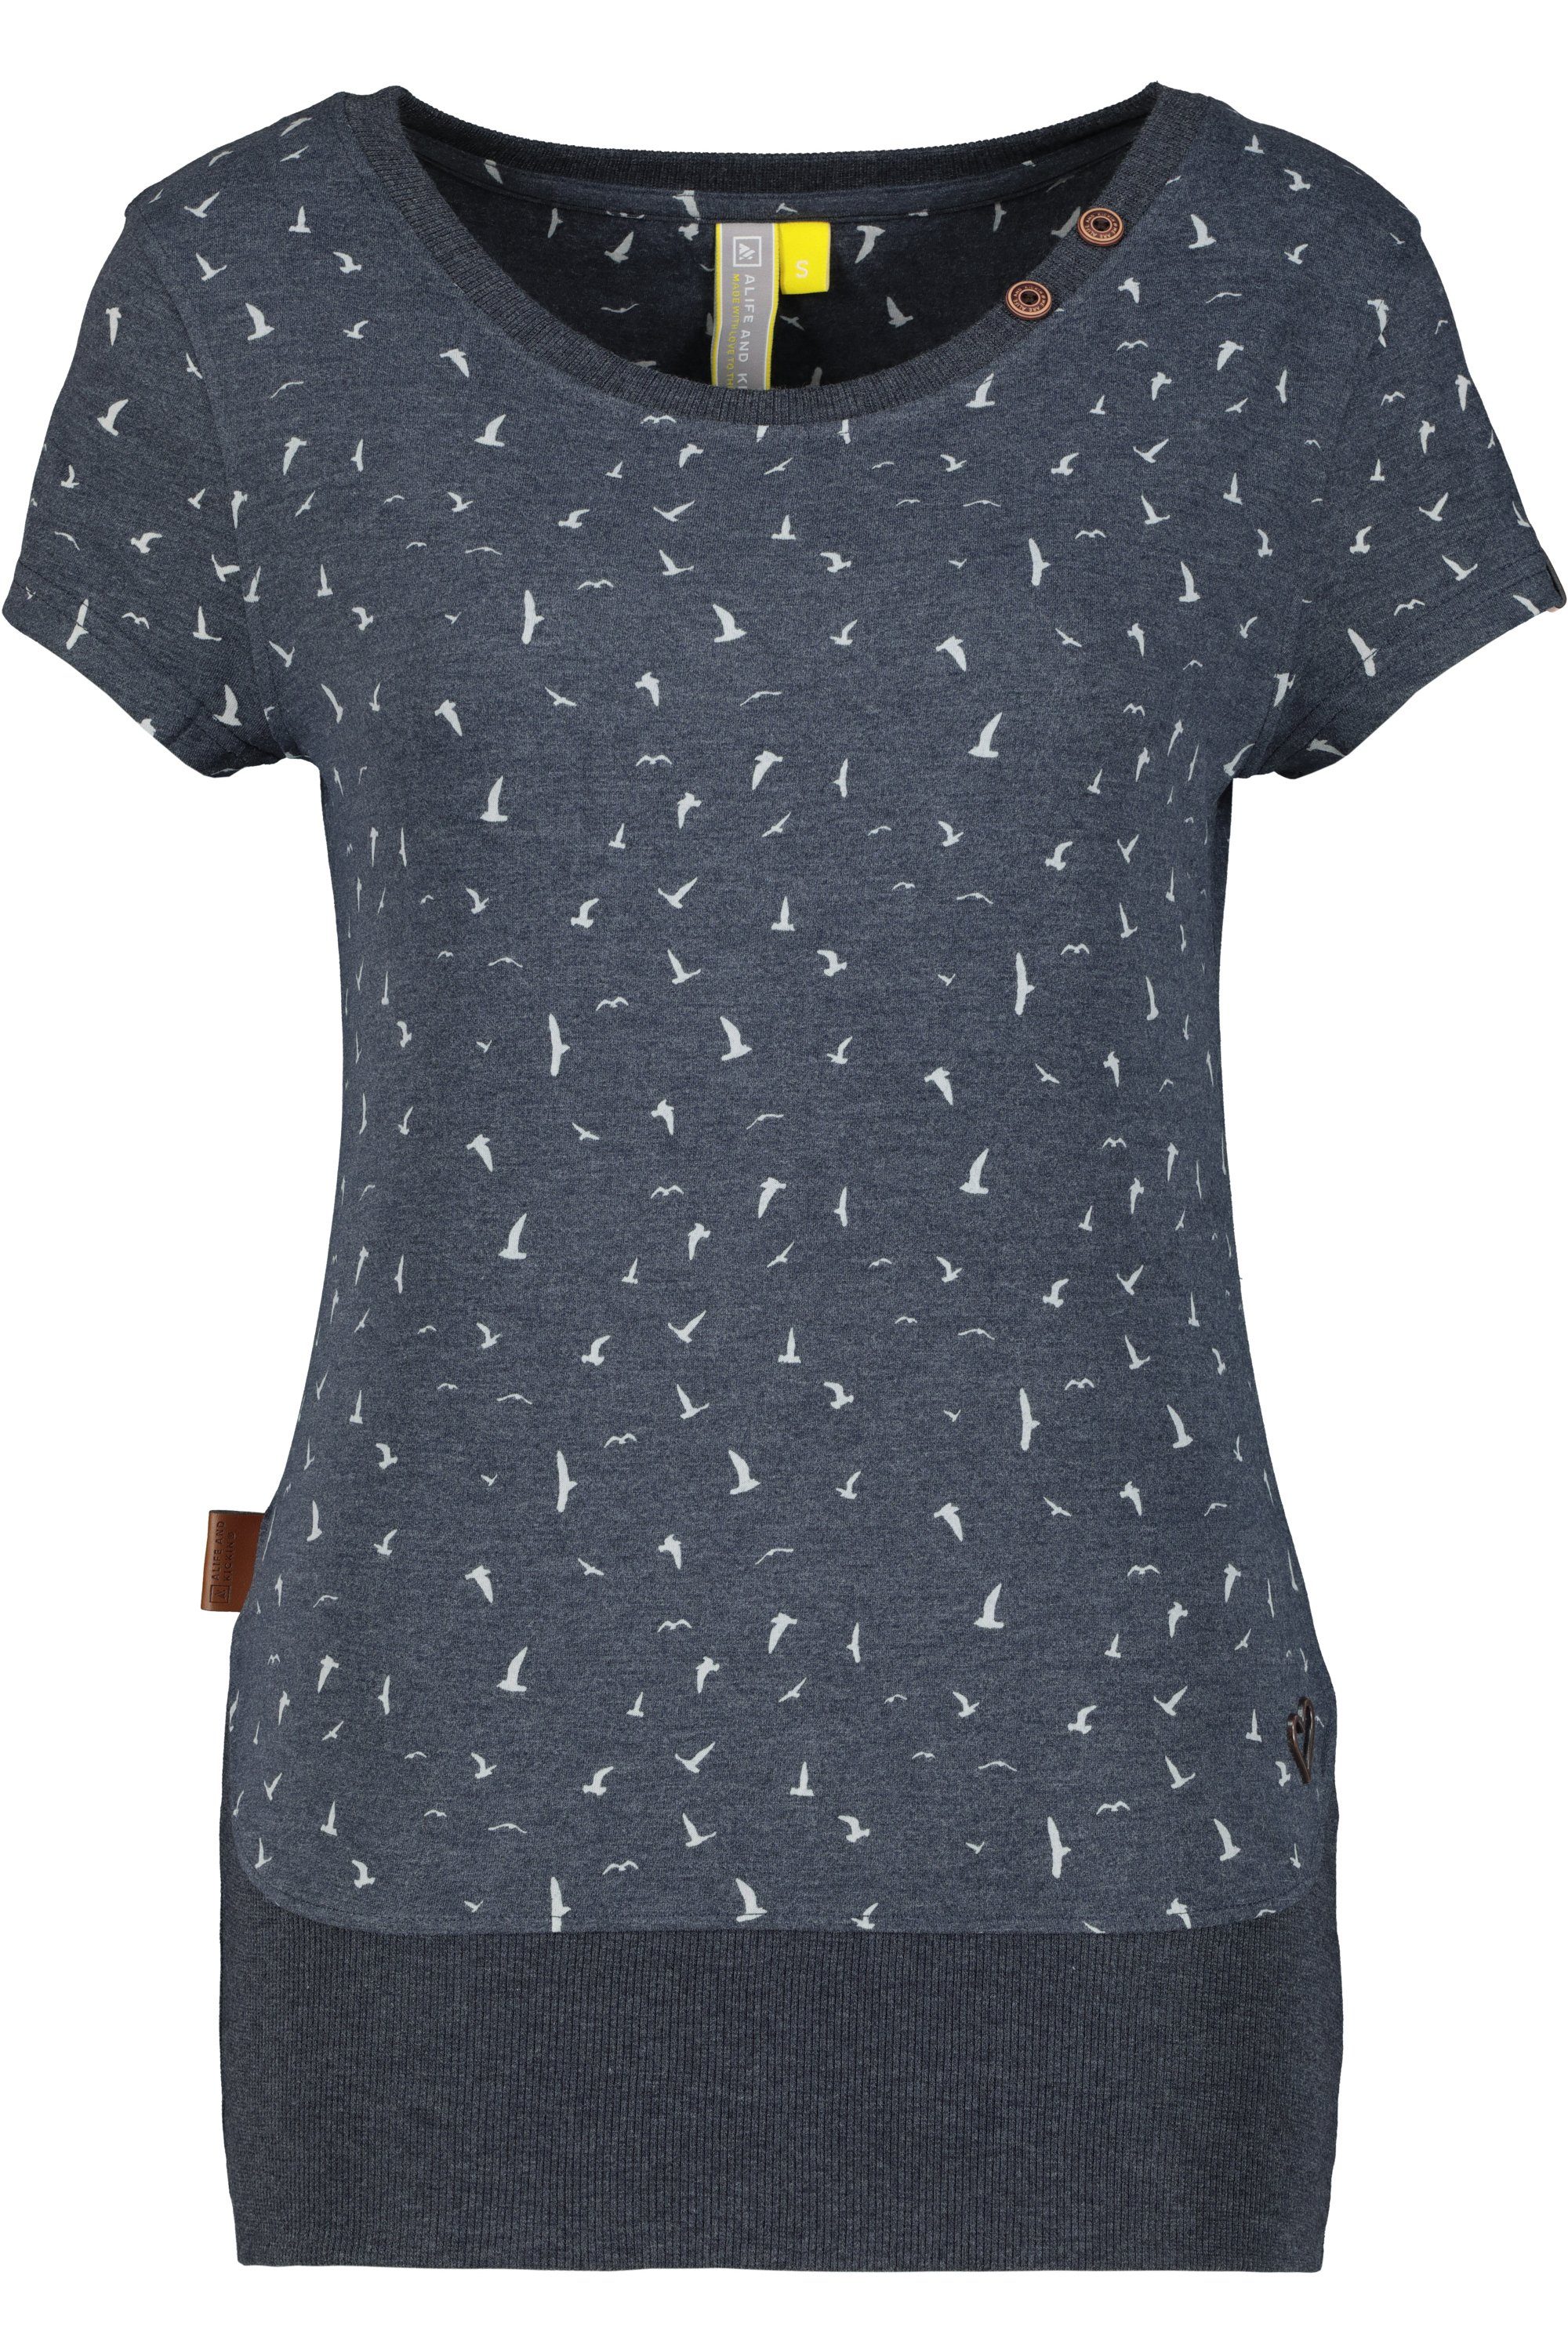 Alife & Kickin T-Shirt CocoAK Damen T-Shirt marine